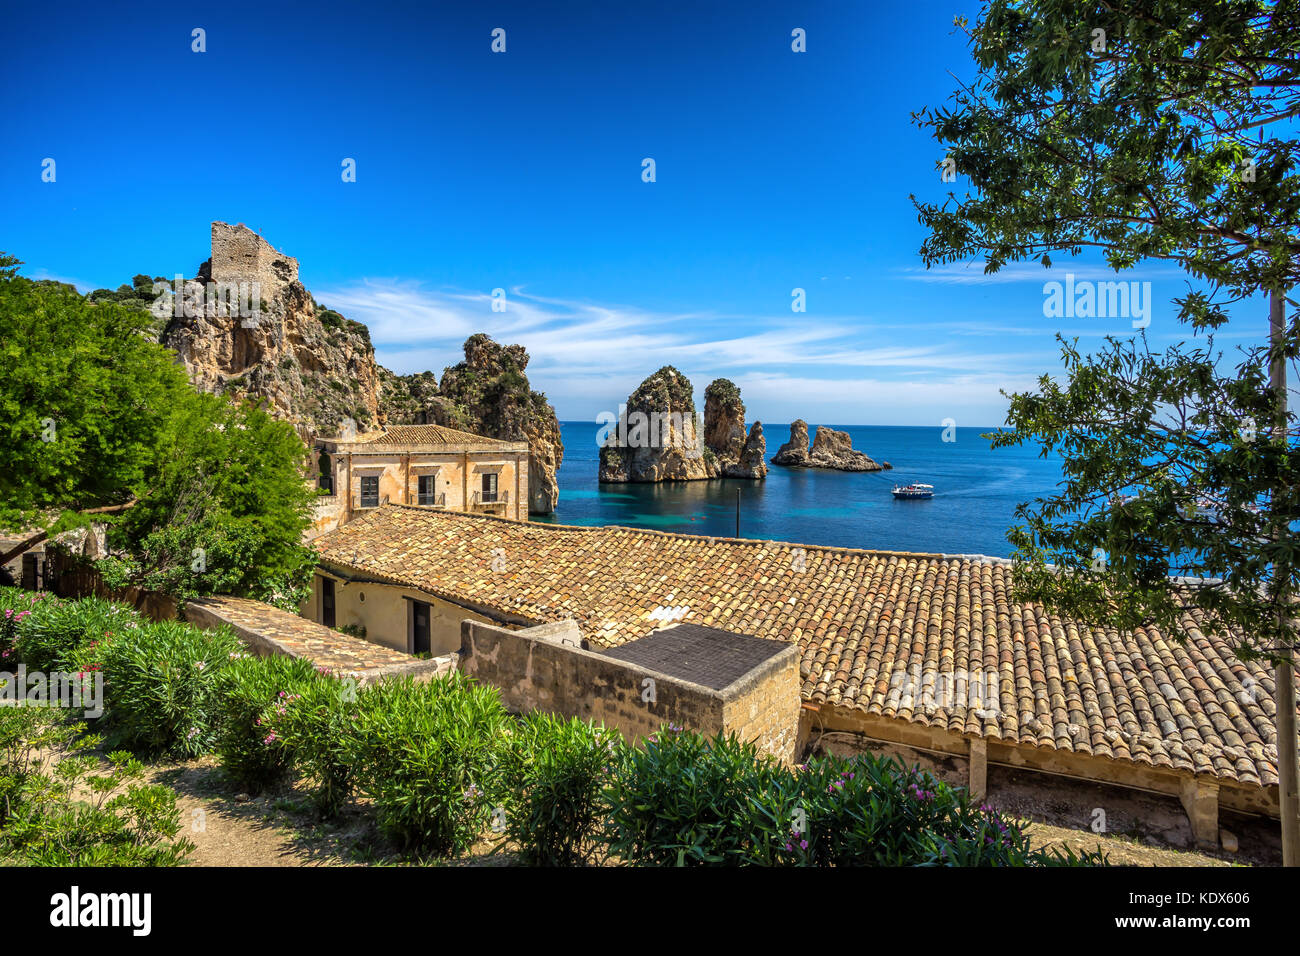 View on Tonnara at Scopello, Sicily, Italy Stock Photo